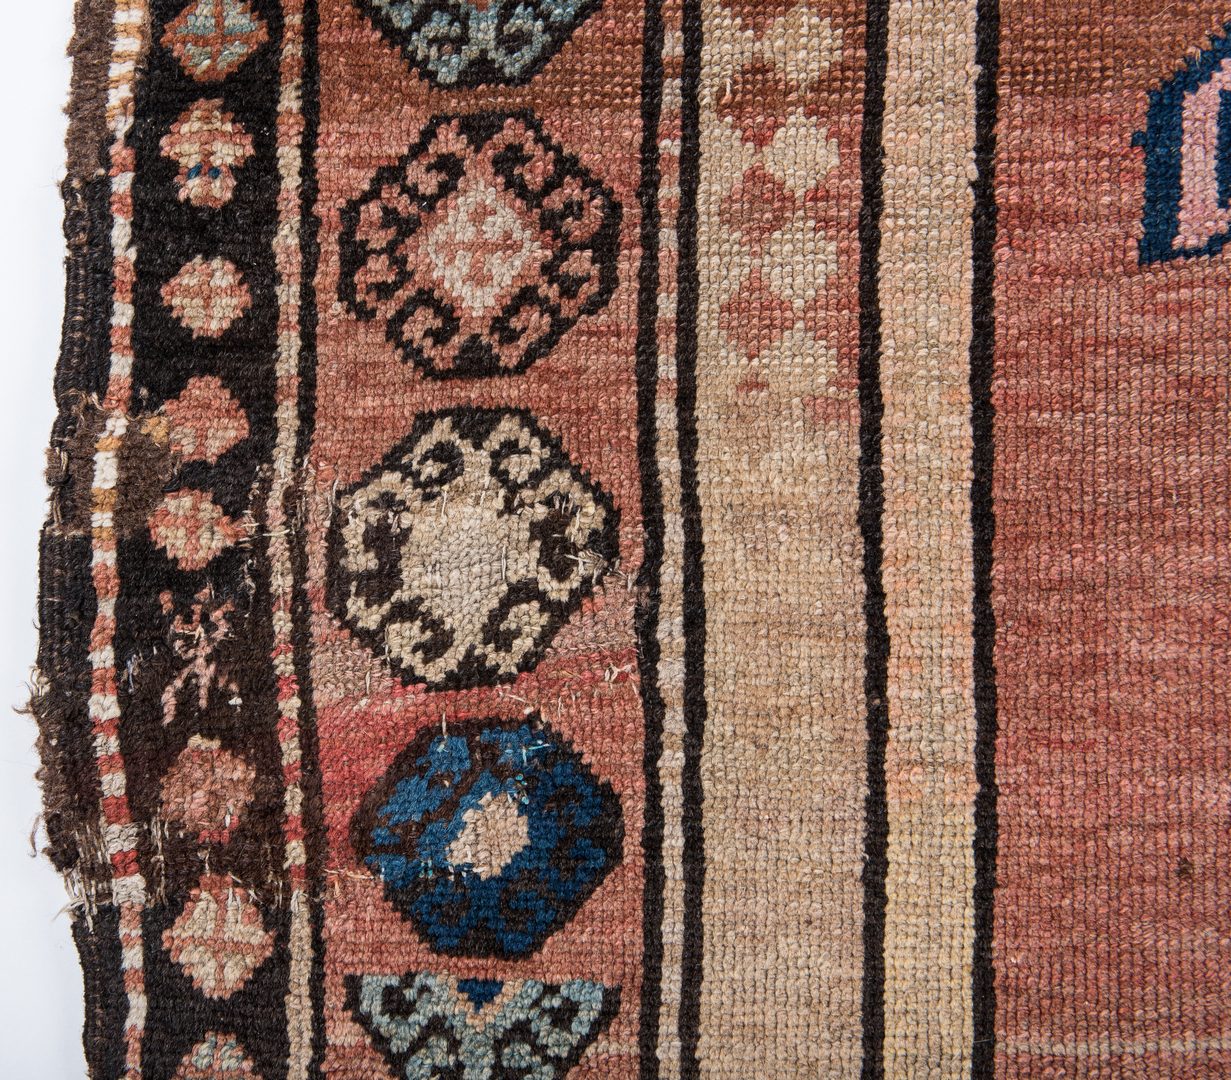 Lot 324: Antique Lenkoran Caucasian Rug, dated